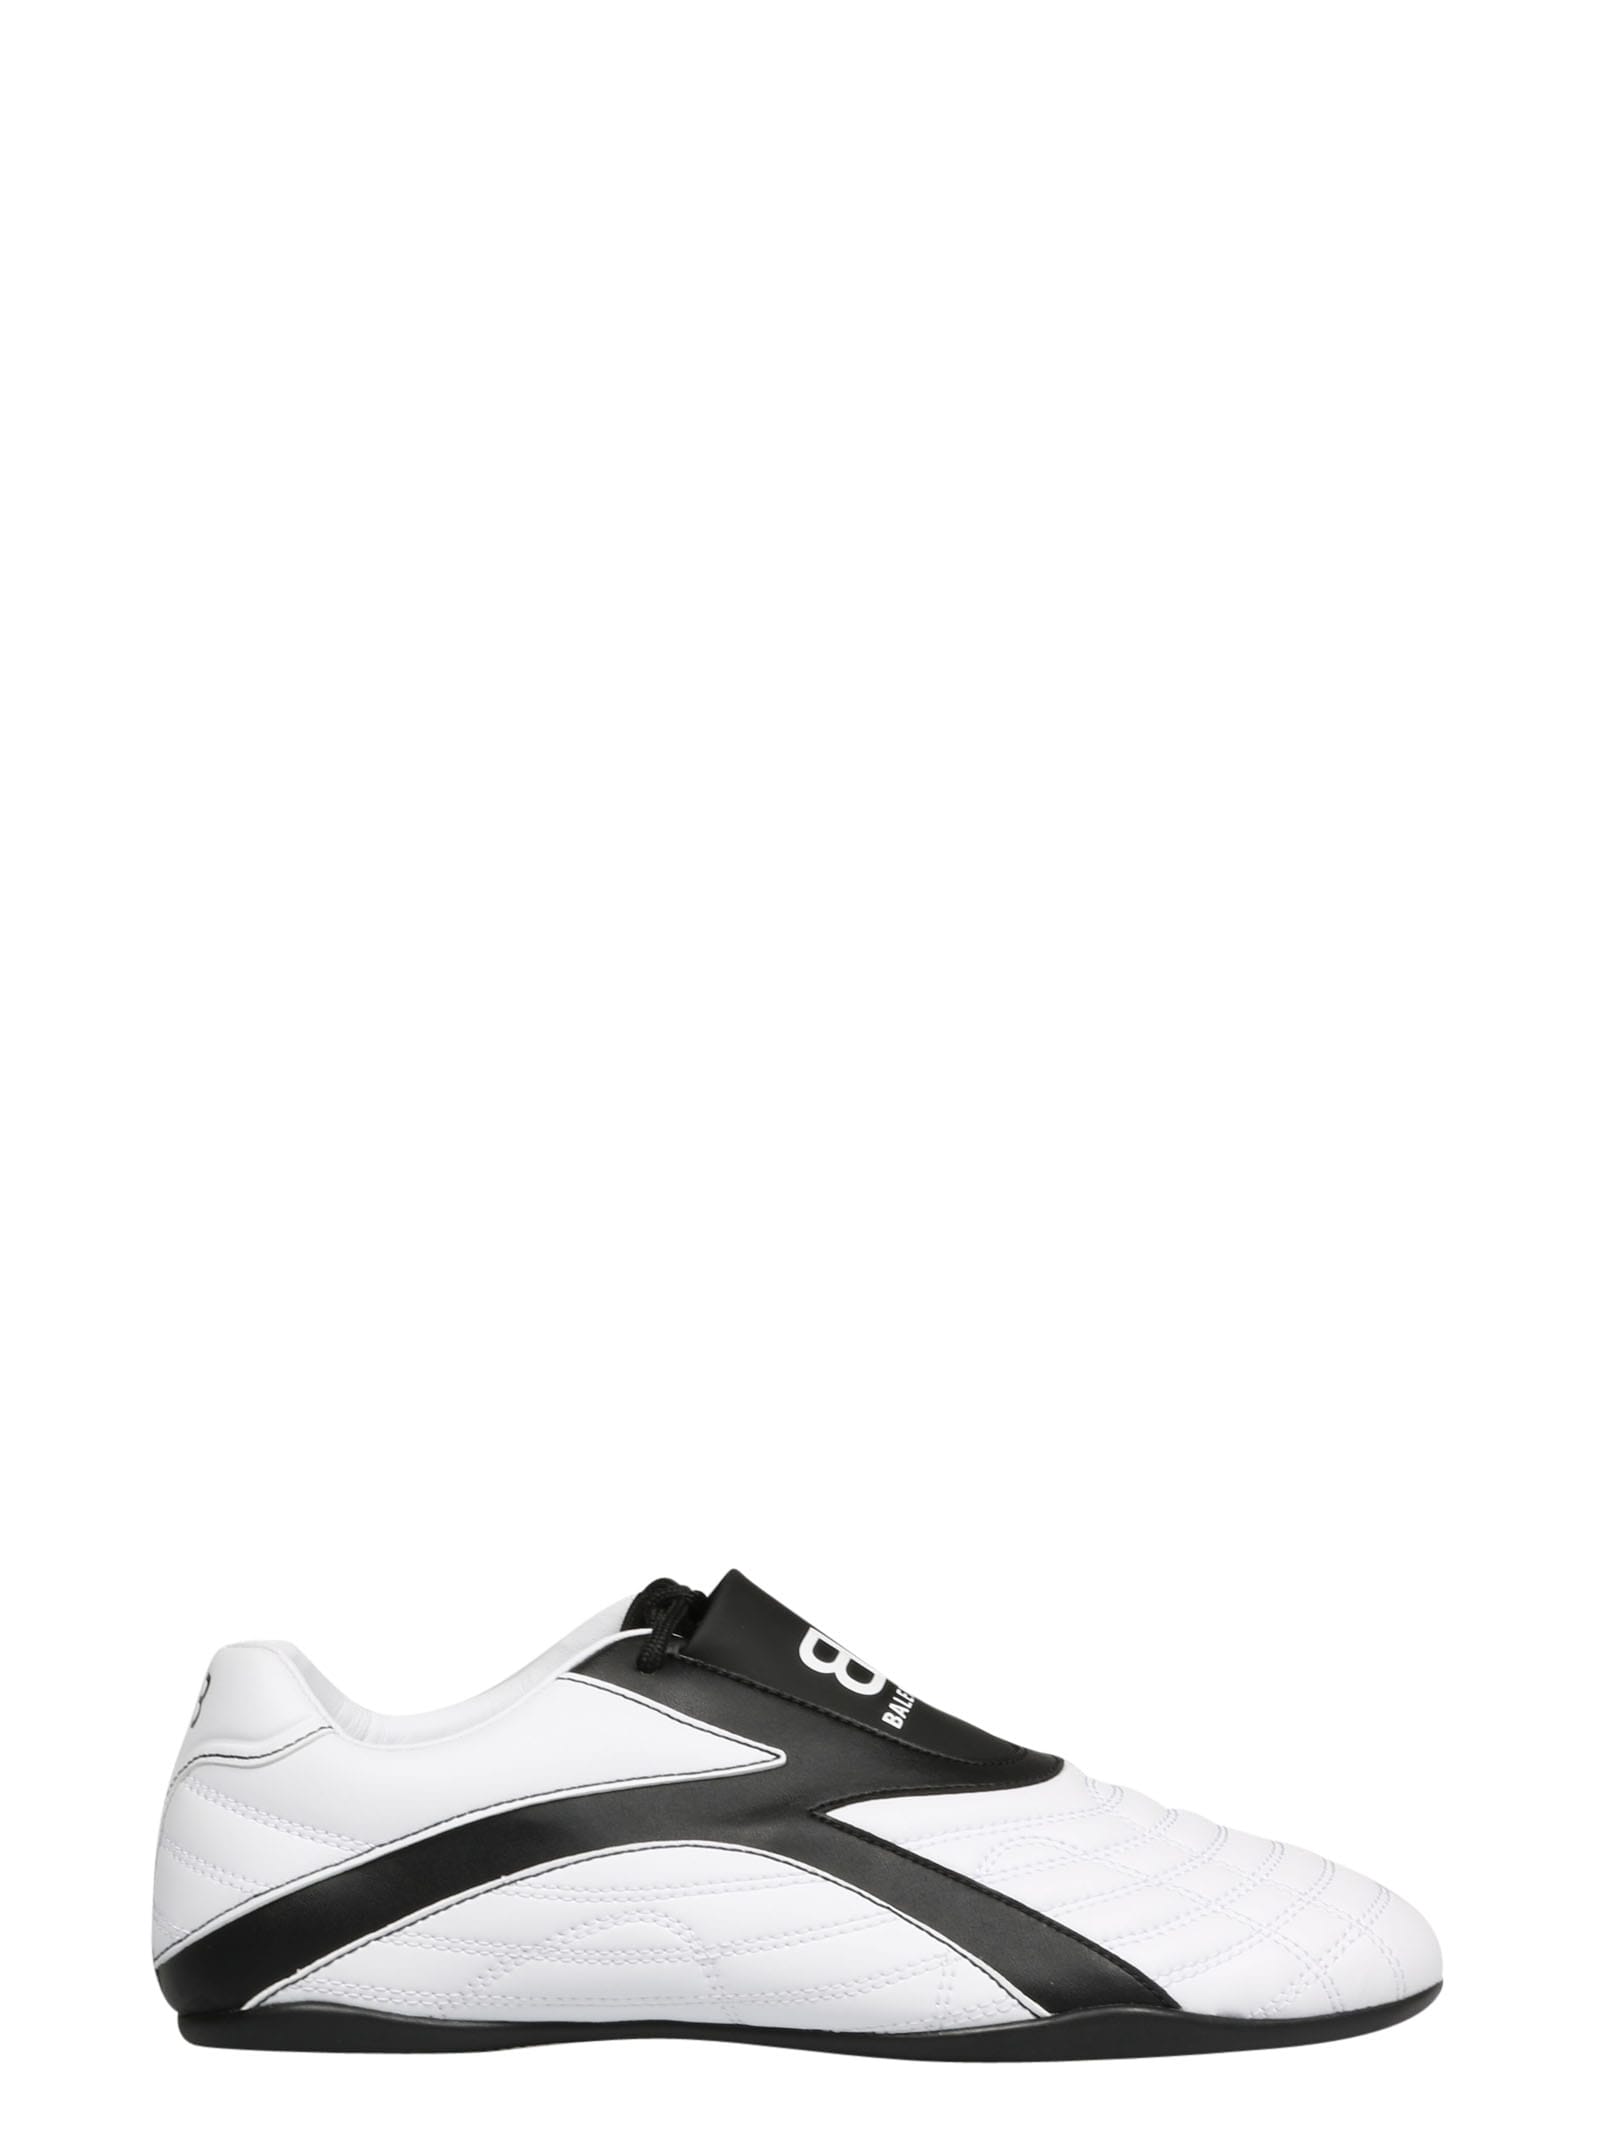 Buy Balenciaga Zen Sneaker online, shop Balenciaga shoes with free shipping